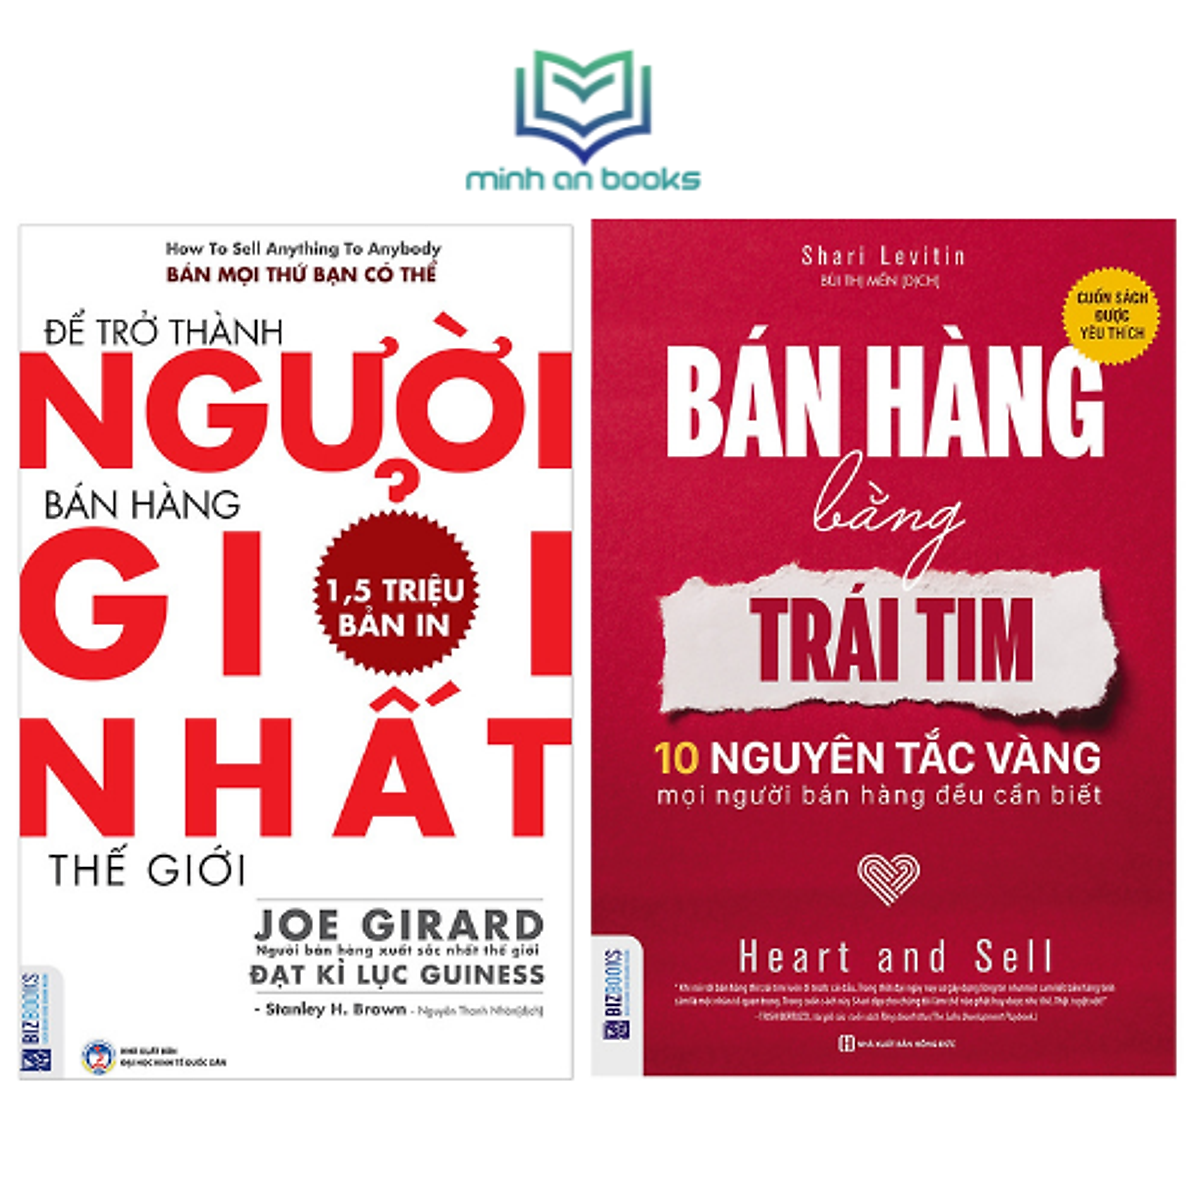 Combo Bộ 2 Cuốn Tuyệt Chiêu Bán Hàng: Để Trở Thành Người Bán Hàng Giỏi Nhất Thế Giới + Bán Hàng Bằng Trái Tim - MinhAnBooks